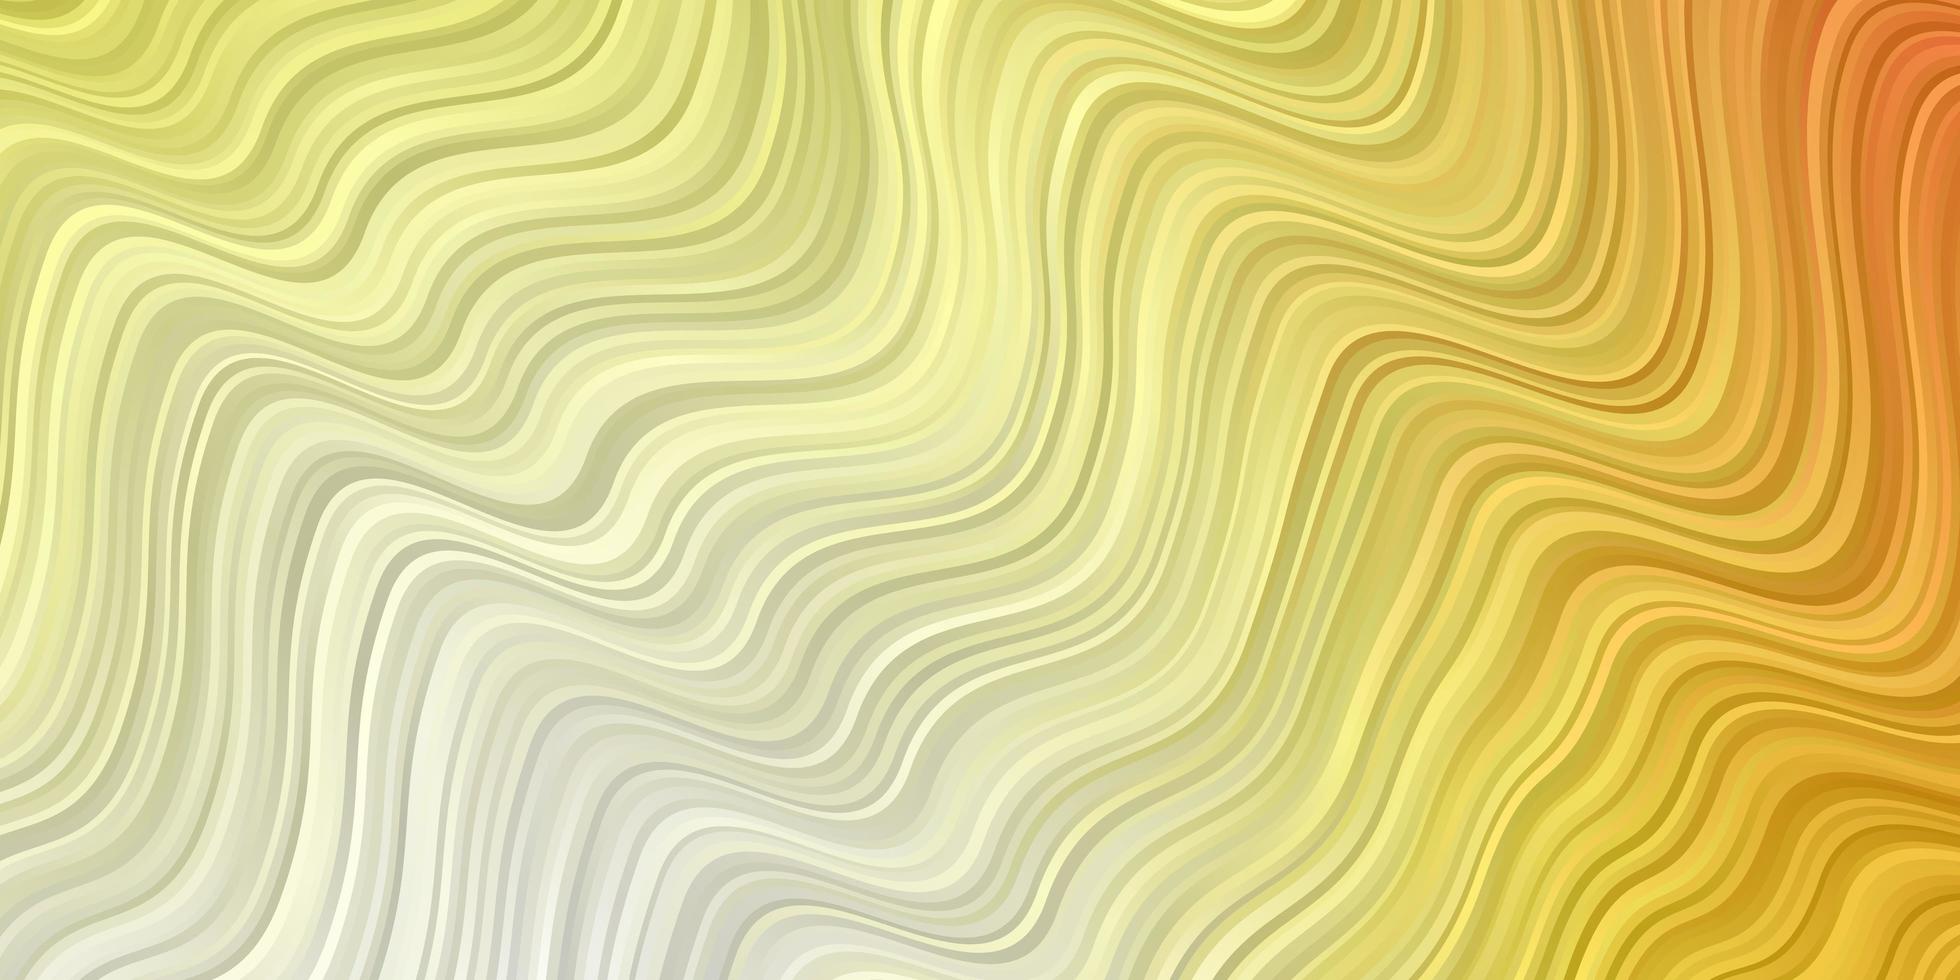 lichtrode, gele vectorlay-out met rondingen. abstracte illustratie met gradiëntbogen. beste ontwerp voor uw posters, banners. vector